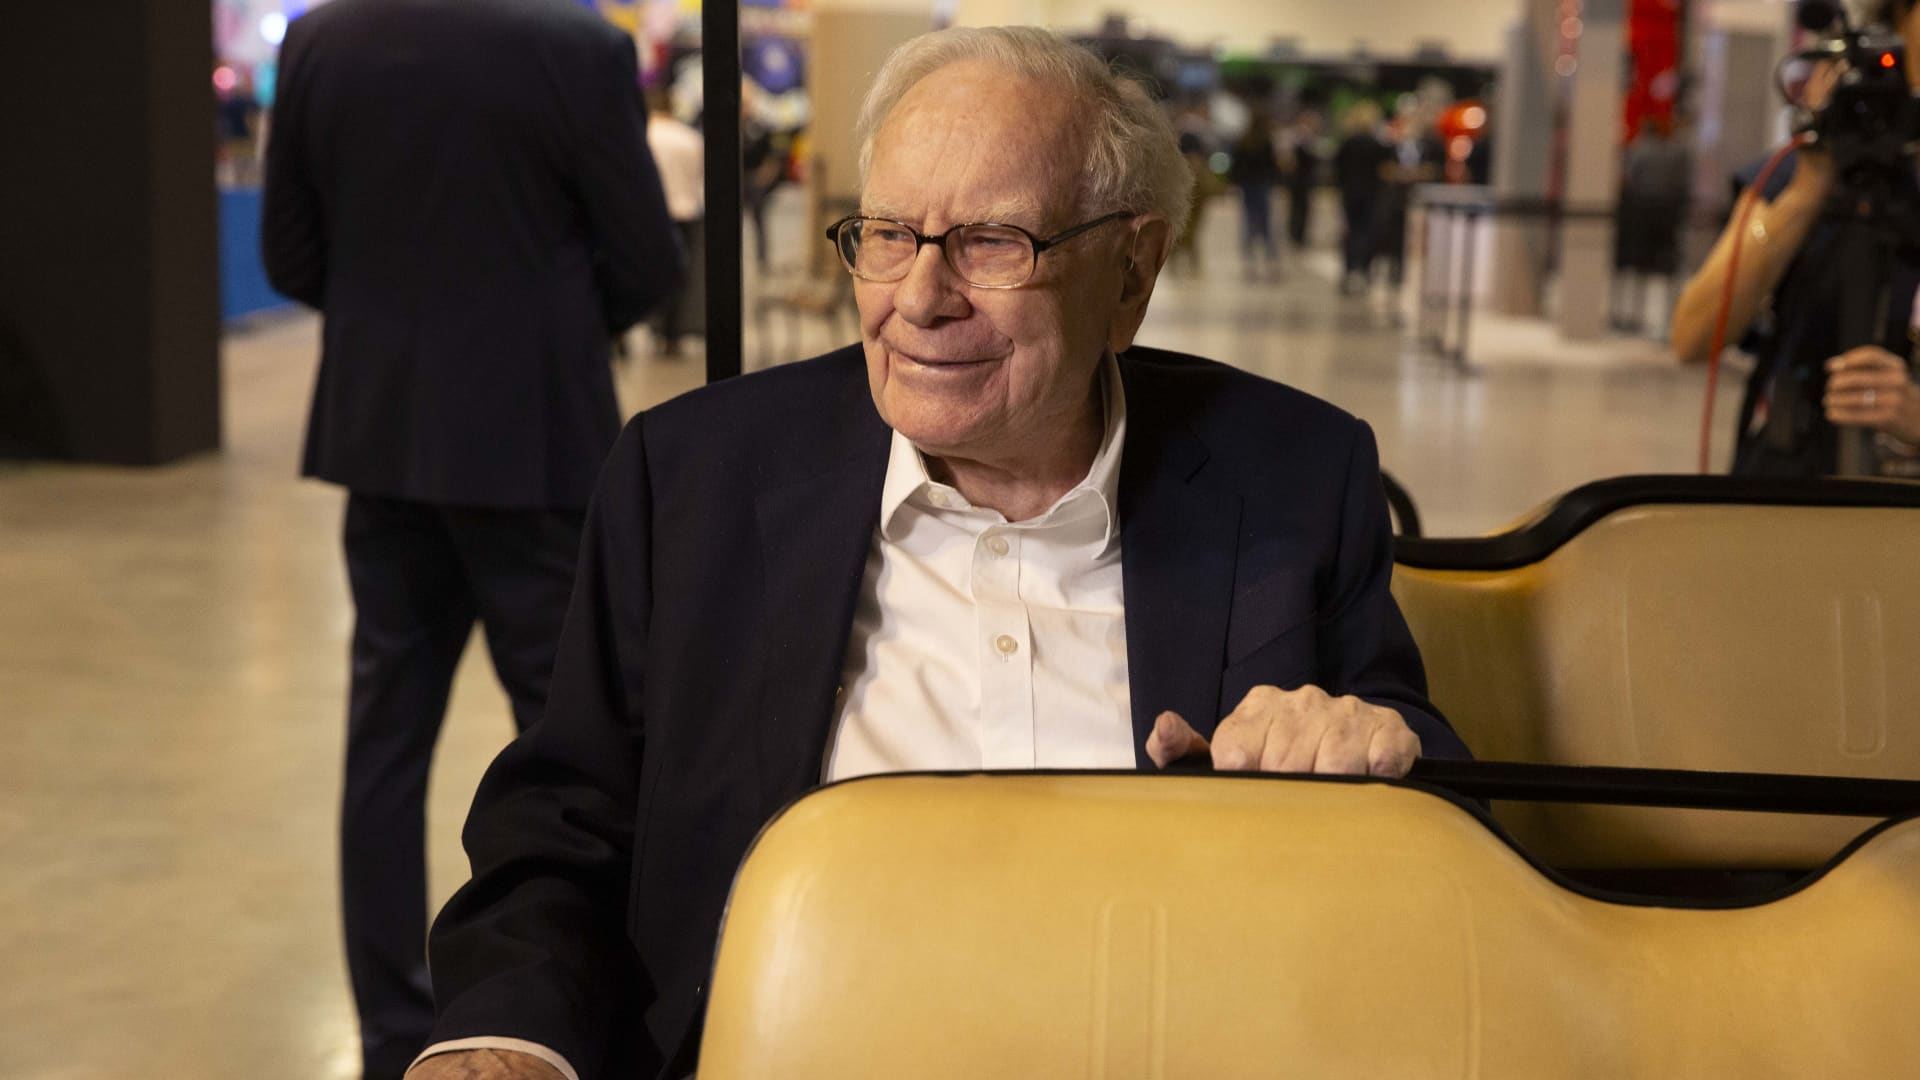 Touring Omaha with a Warren Buffett author [Video]